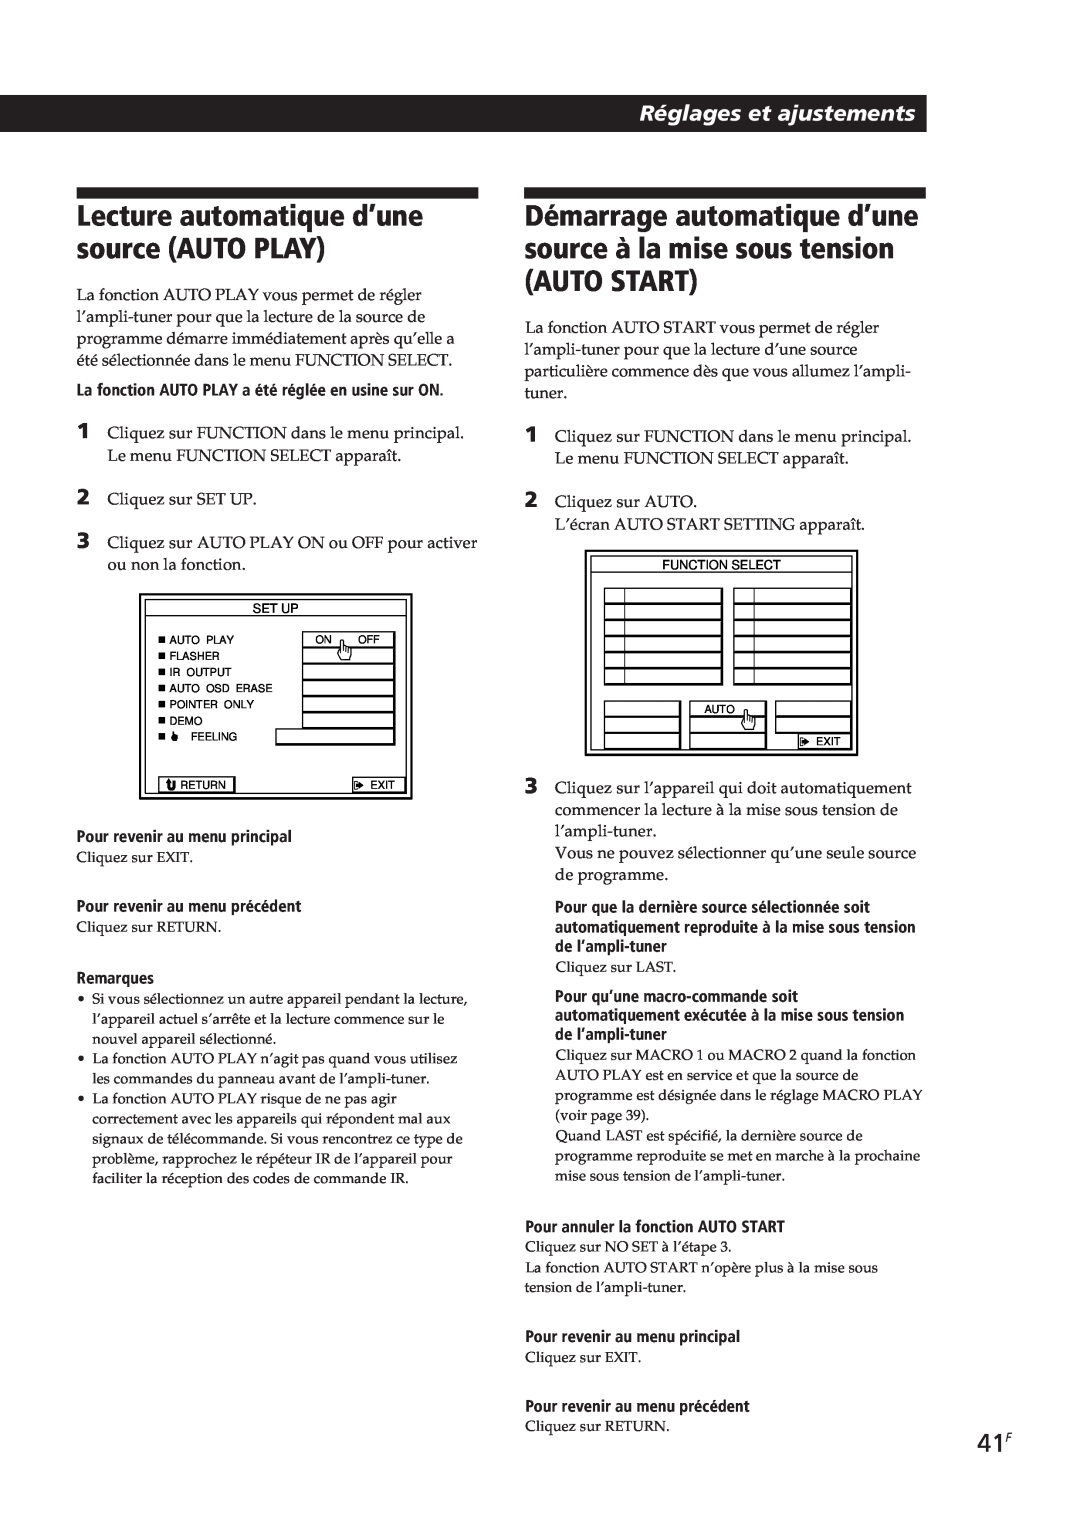 Sony STR-DE805G manual Auto Start, Lecture automatique d’une source AUTO PLAY, Réglages et ajustements, Remarques 